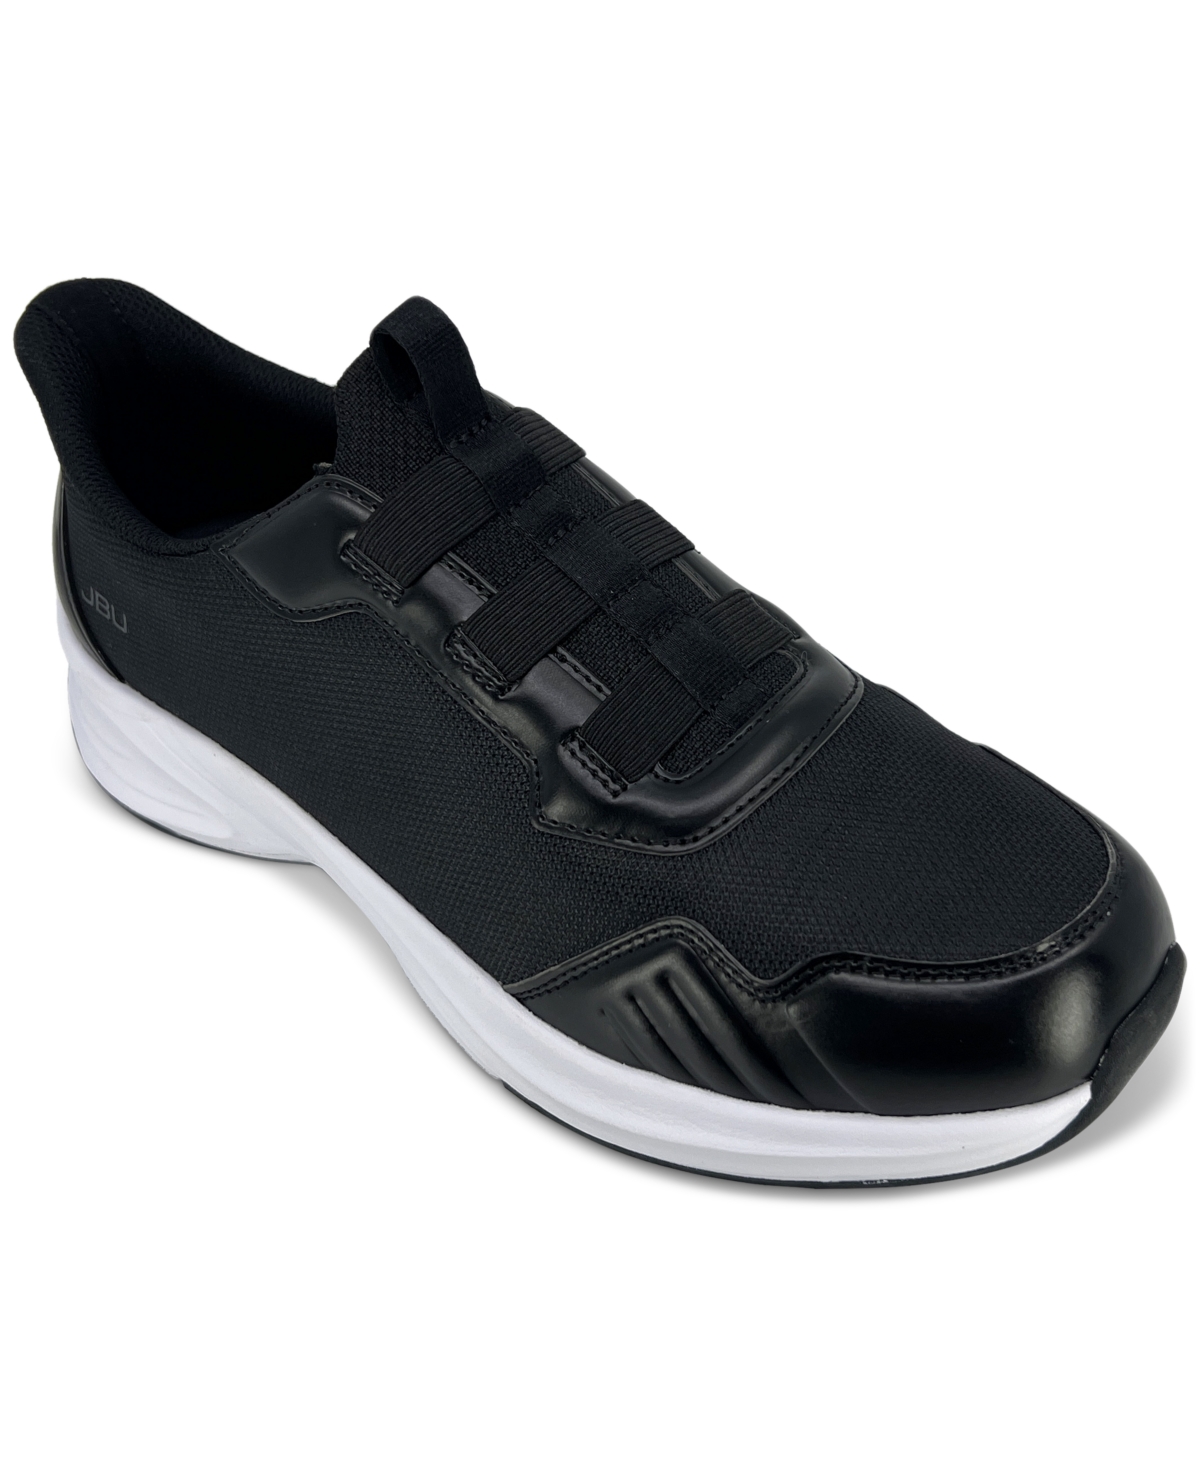 Men's Dash Touch-Less Slip-On Sneakers - Black/Black